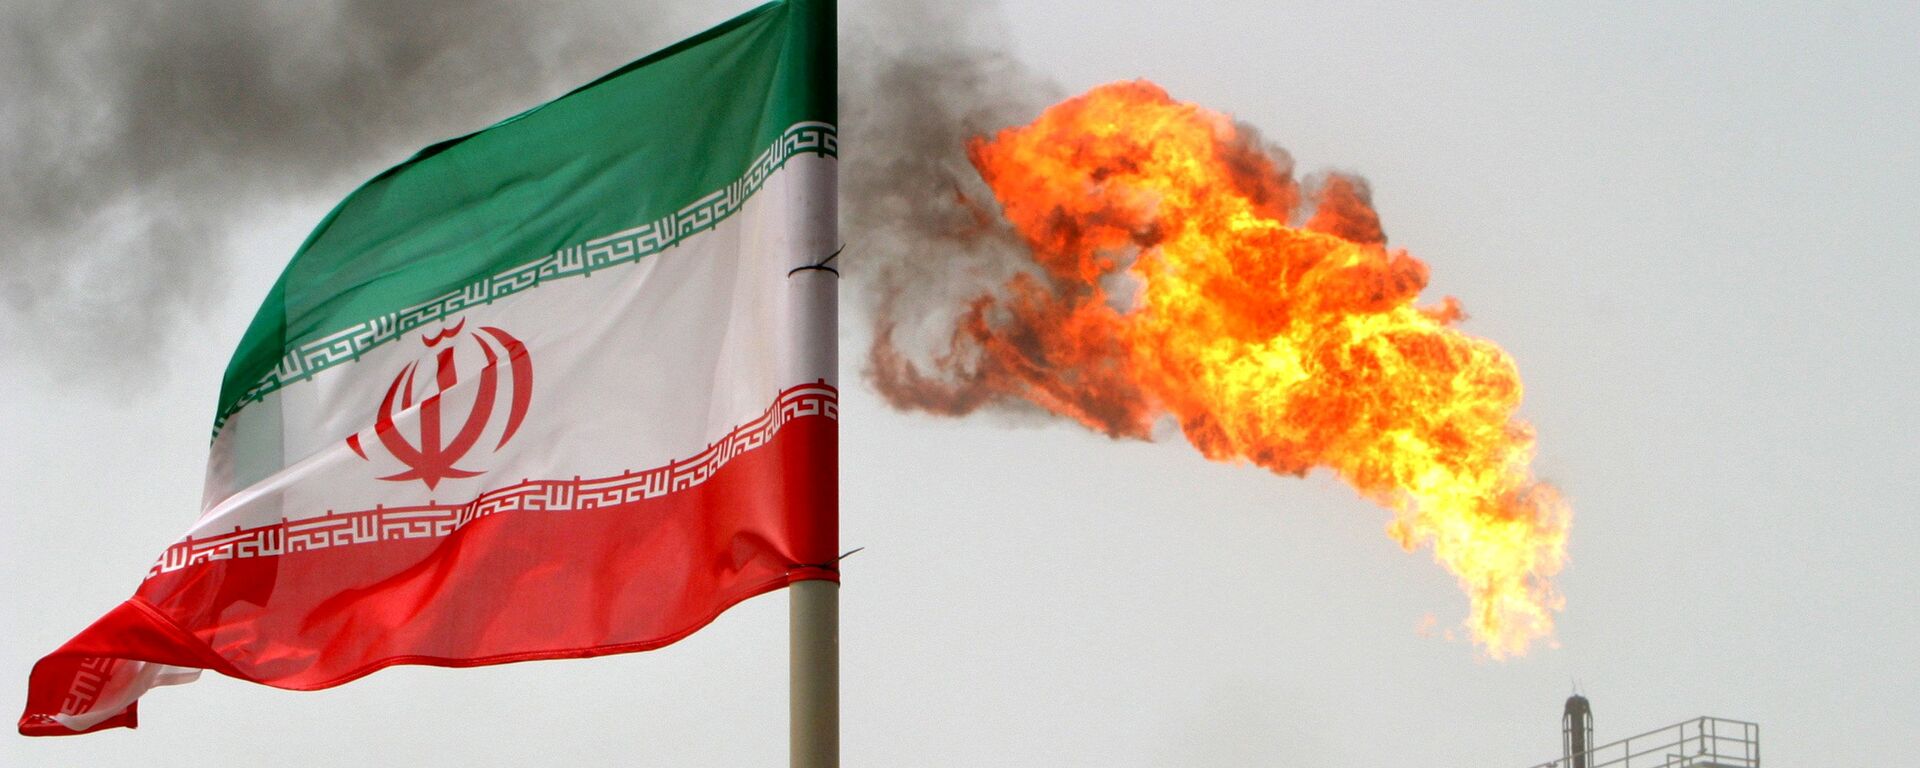 Флаг Ирана на нефтедобывающей платформе на нефтяных месторождениях в Соруше в Персидском заливе - Sputnik Азербайджан, 1920, 08.10.2021